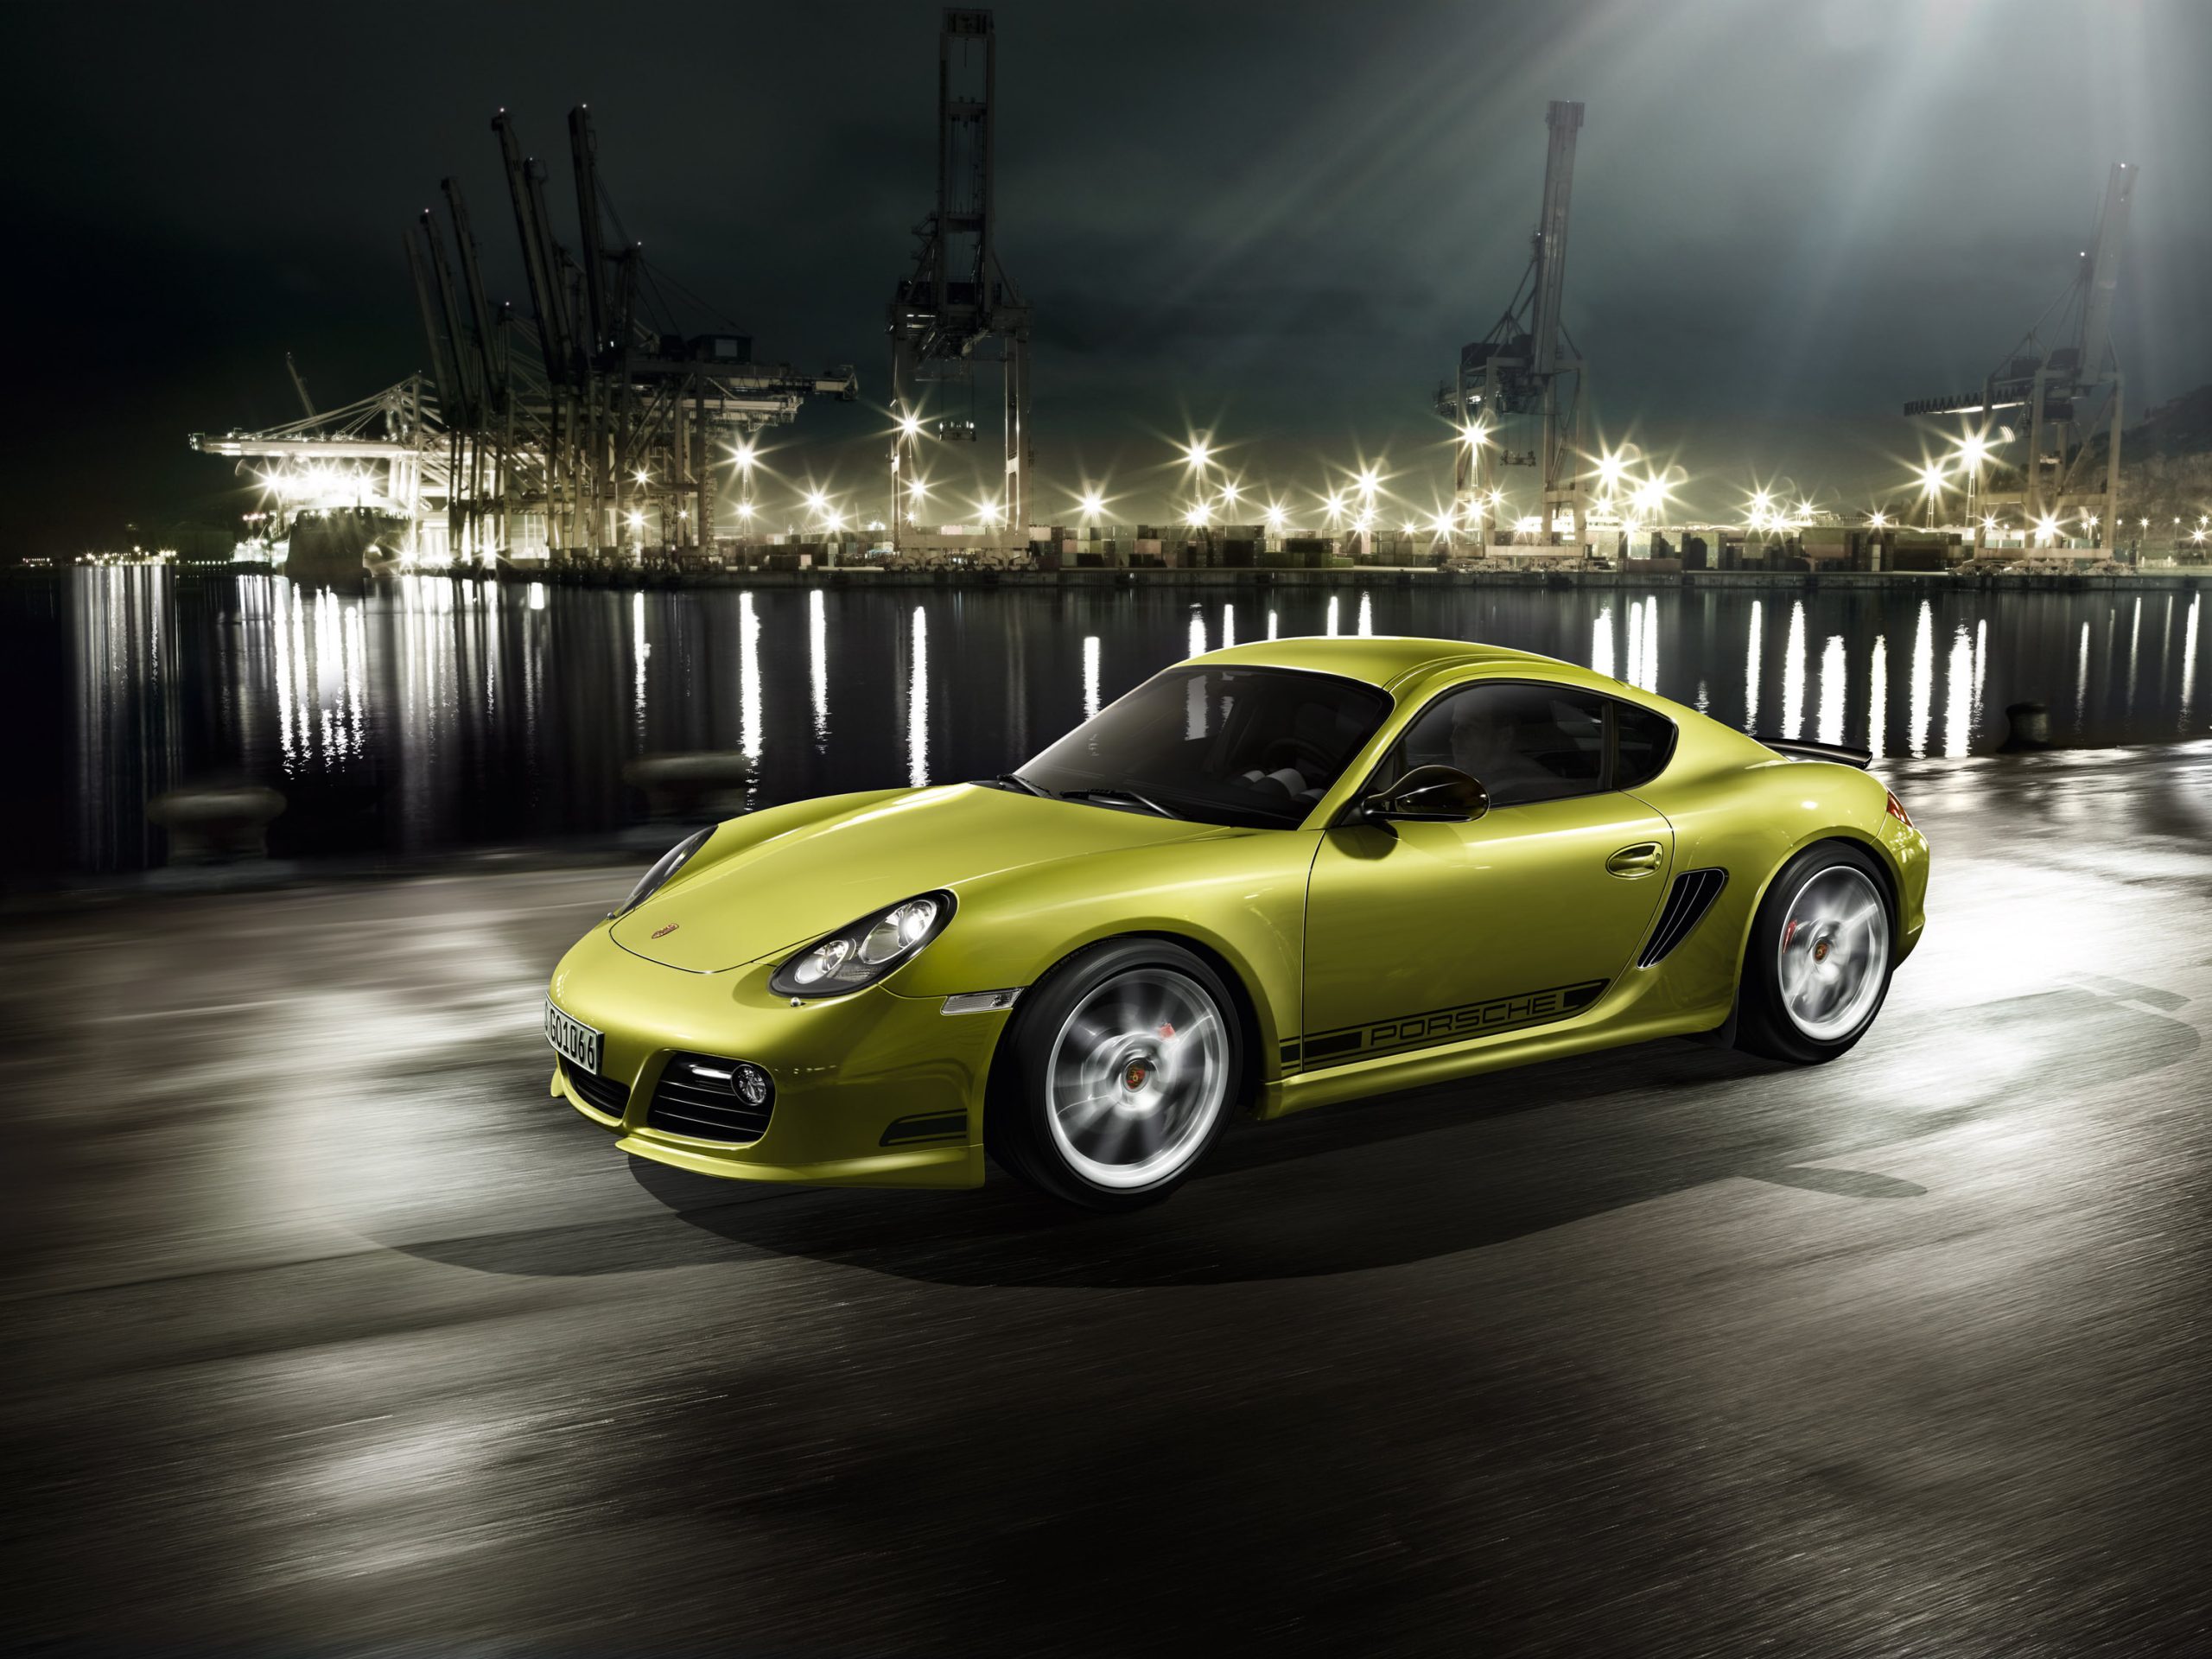 Porsche Premium Indoor Car Cover 987.2 Cayman - Rennlist - Porsche  Discussion Forums